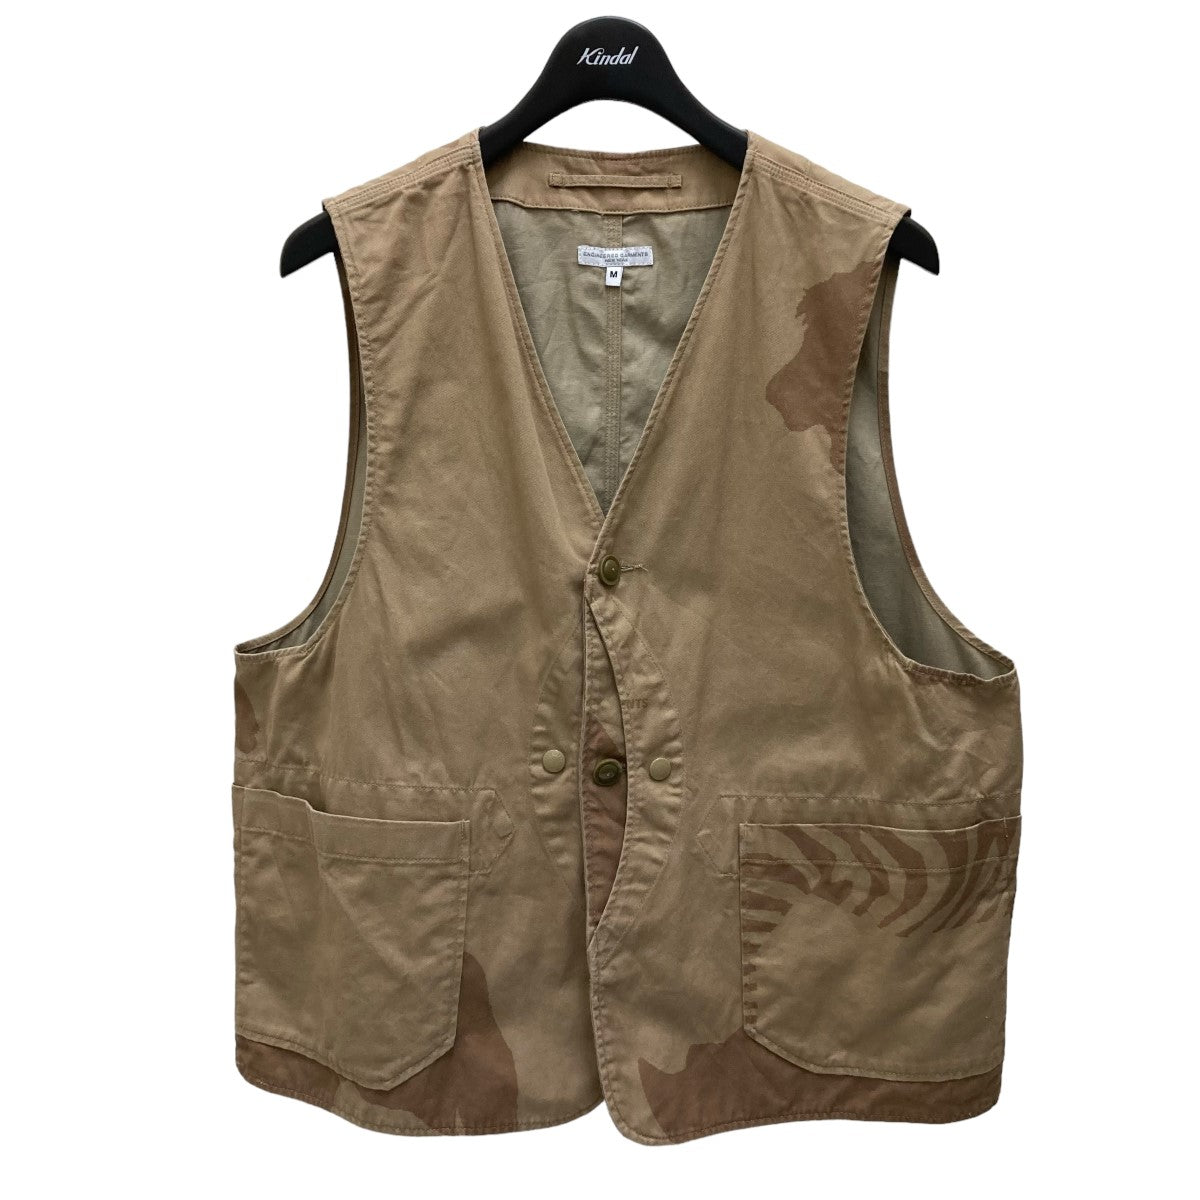 Engineered Garments(エンジニアードガーメンツ) Upland Vest 